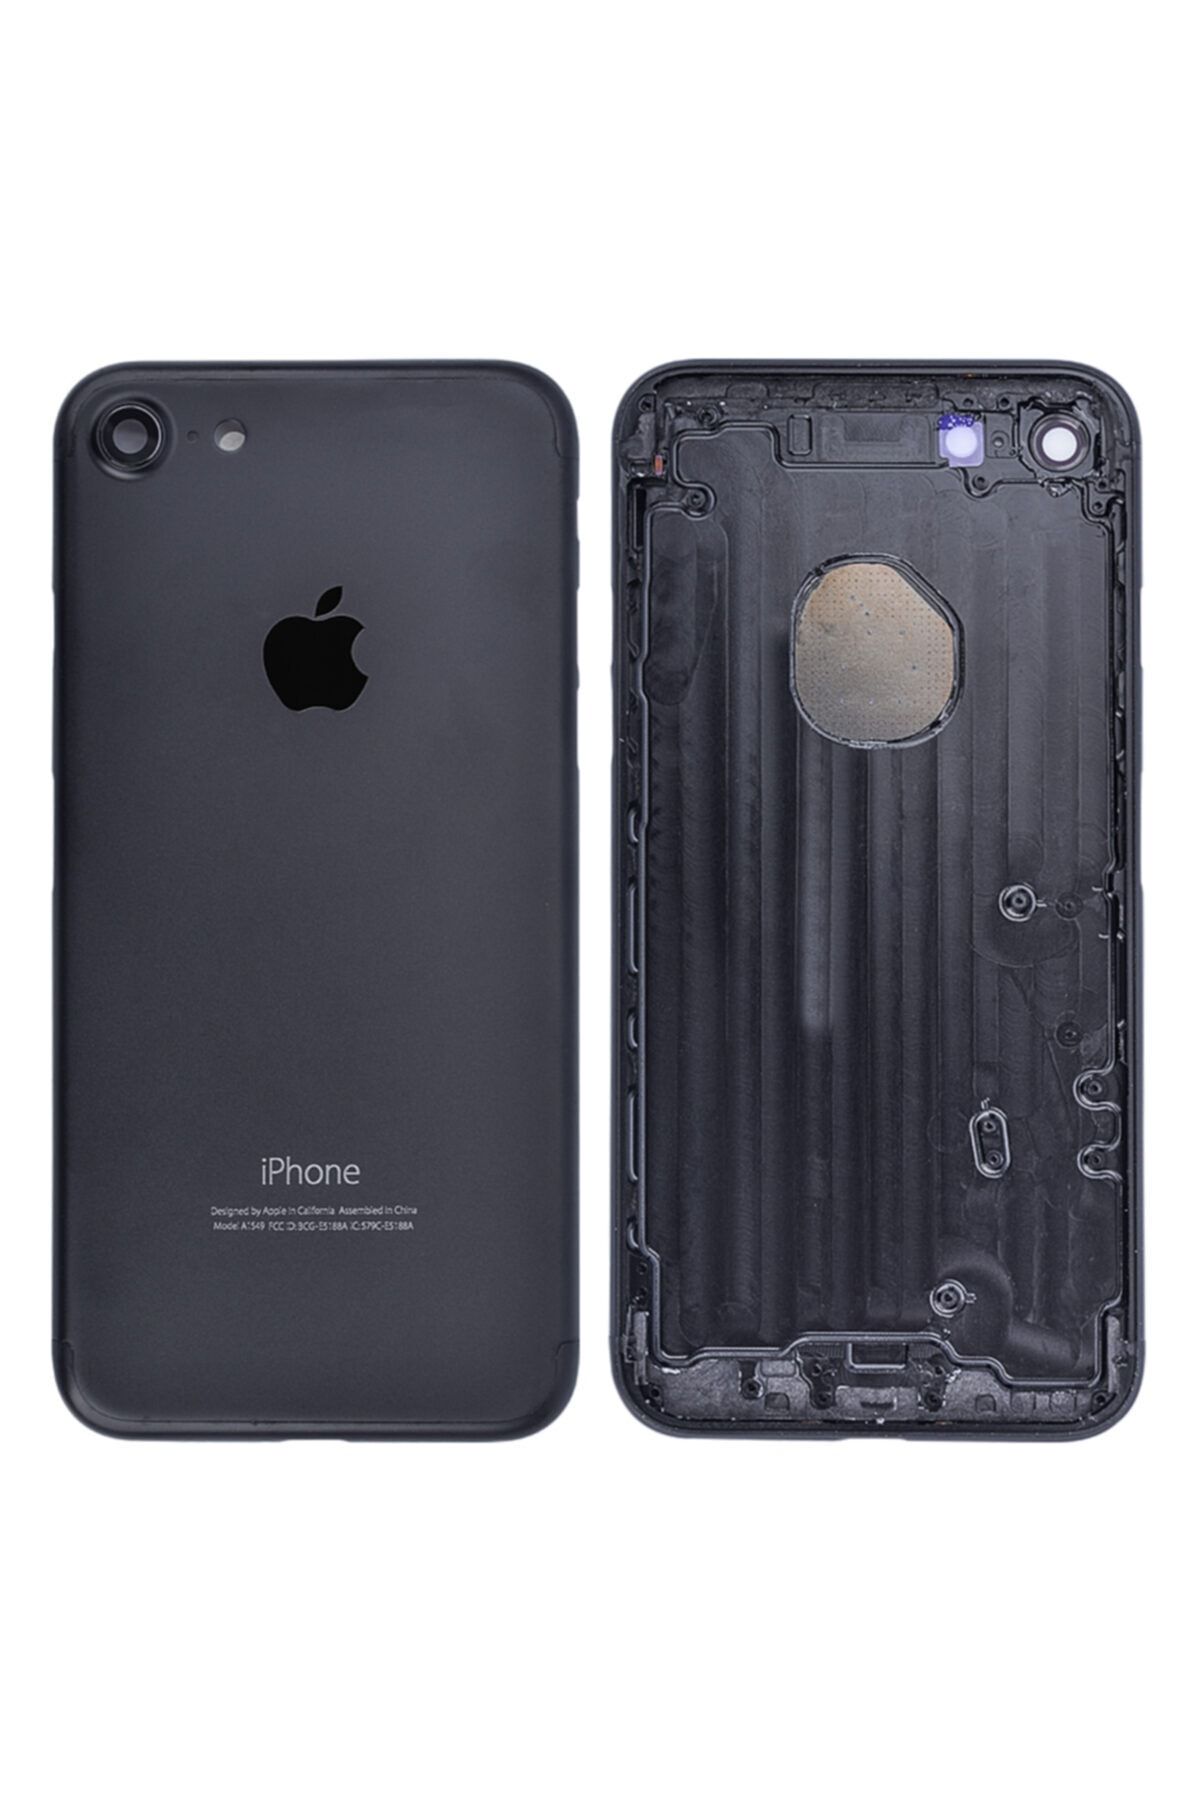 Apple Iphone 7g Kasa Kapak Siyah